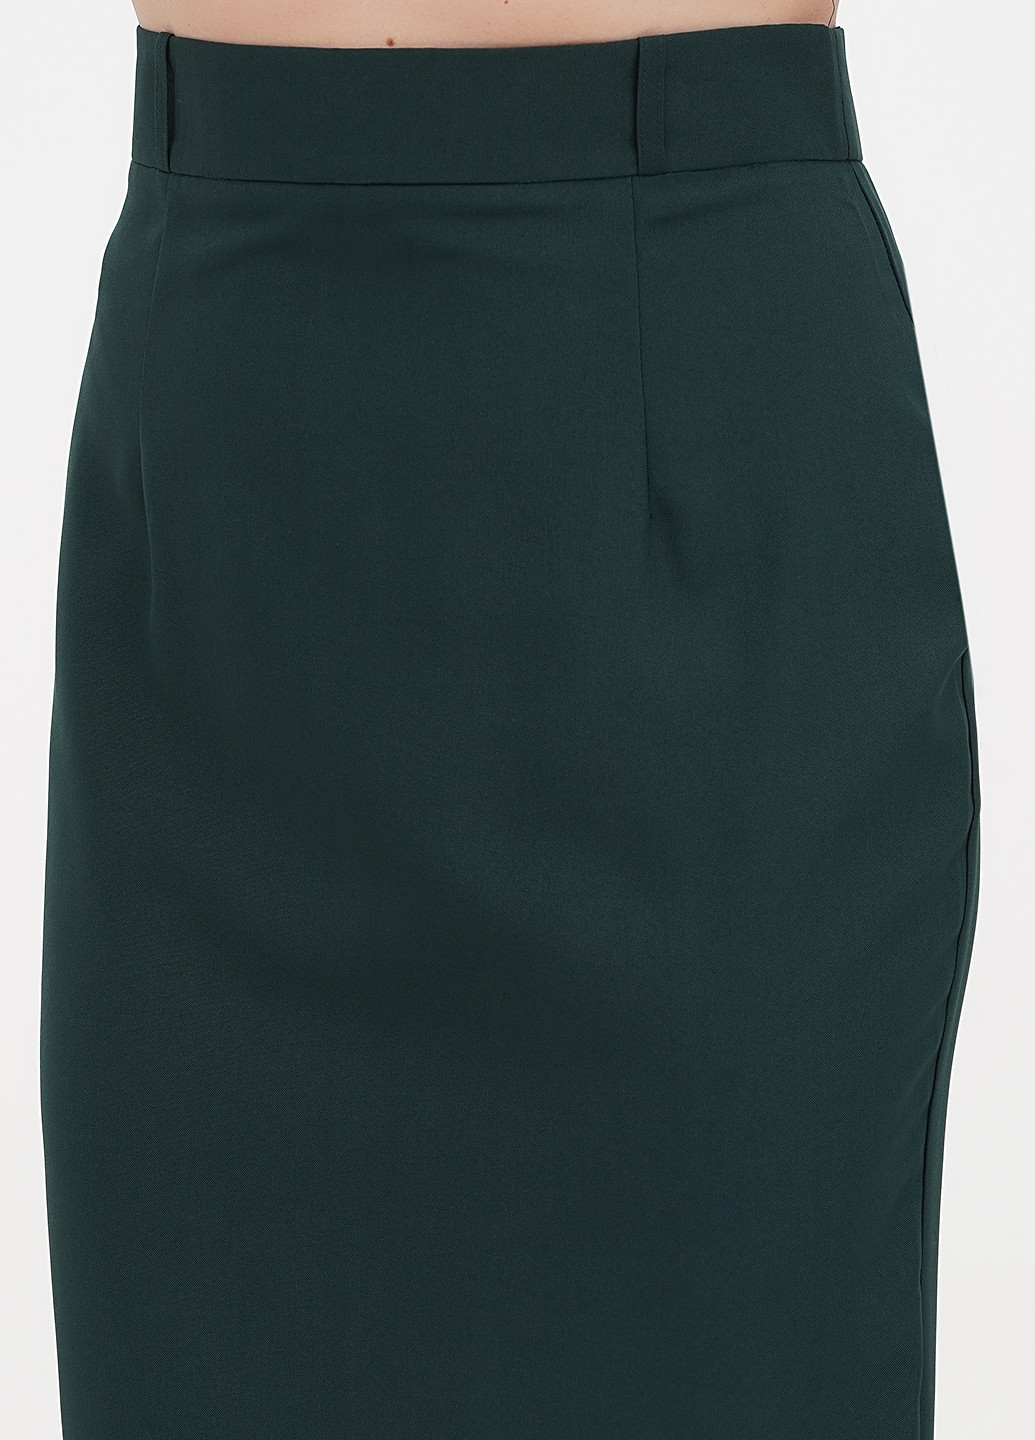 Темно-зеленая кэжуал однотонная юбка Maurini карандаш